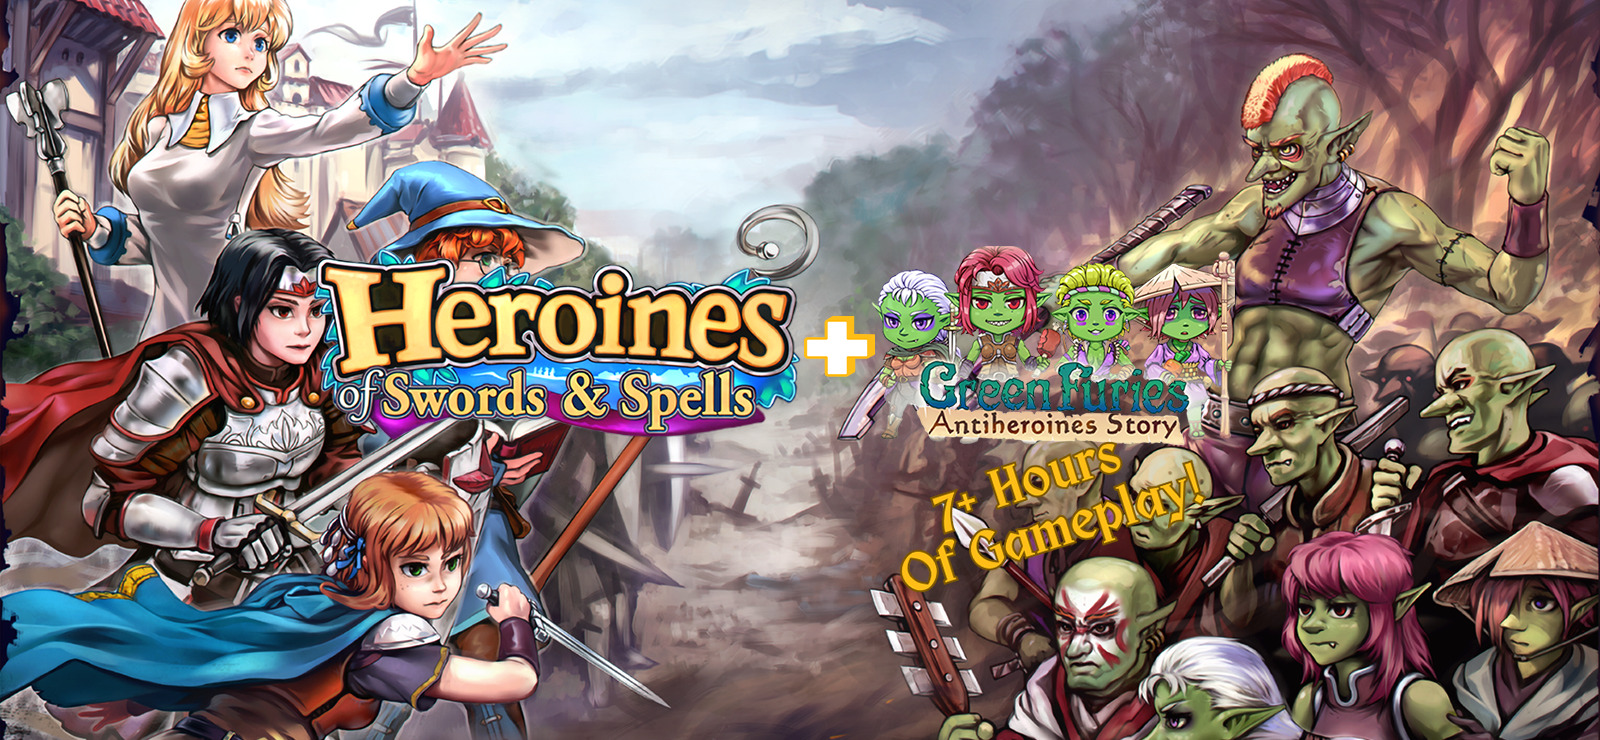 free Heroines of Swords & Spells + Green Furies DLC